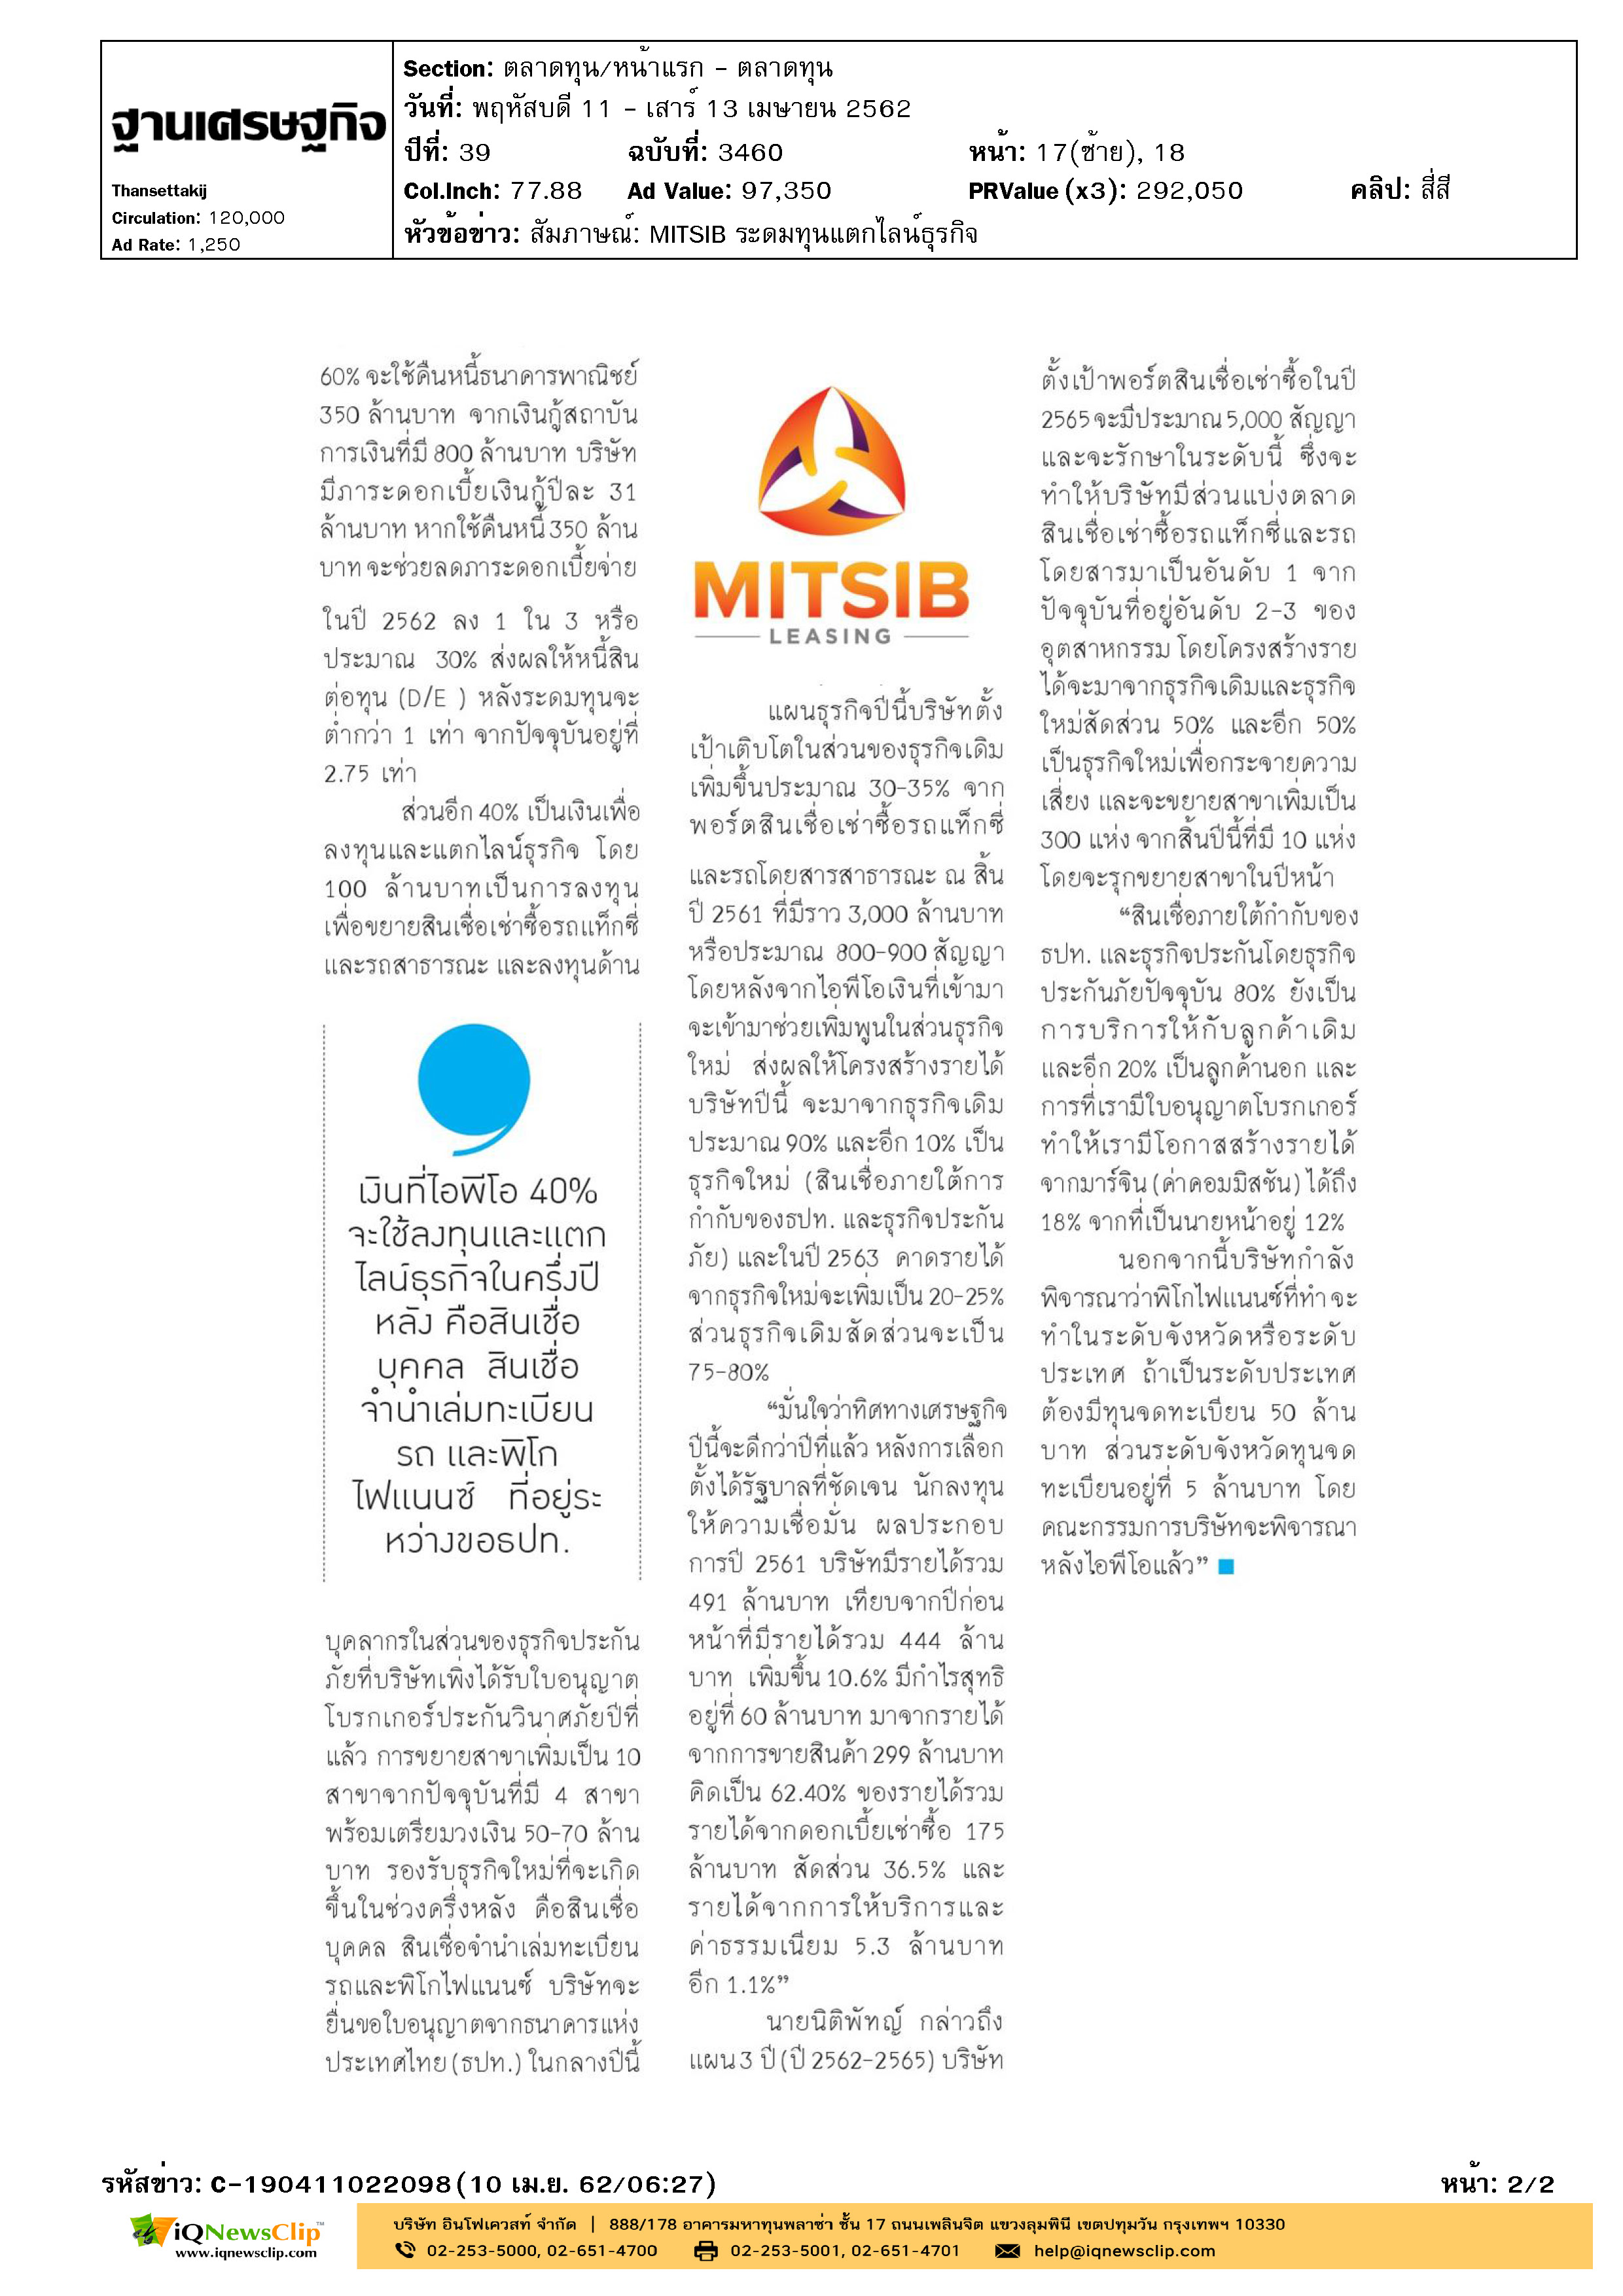 ฐานเศรษฐกิจ_สัมภาษณ์ MITSIB ระดมทุนแตกไลน์ธุรกิจ_Page_2